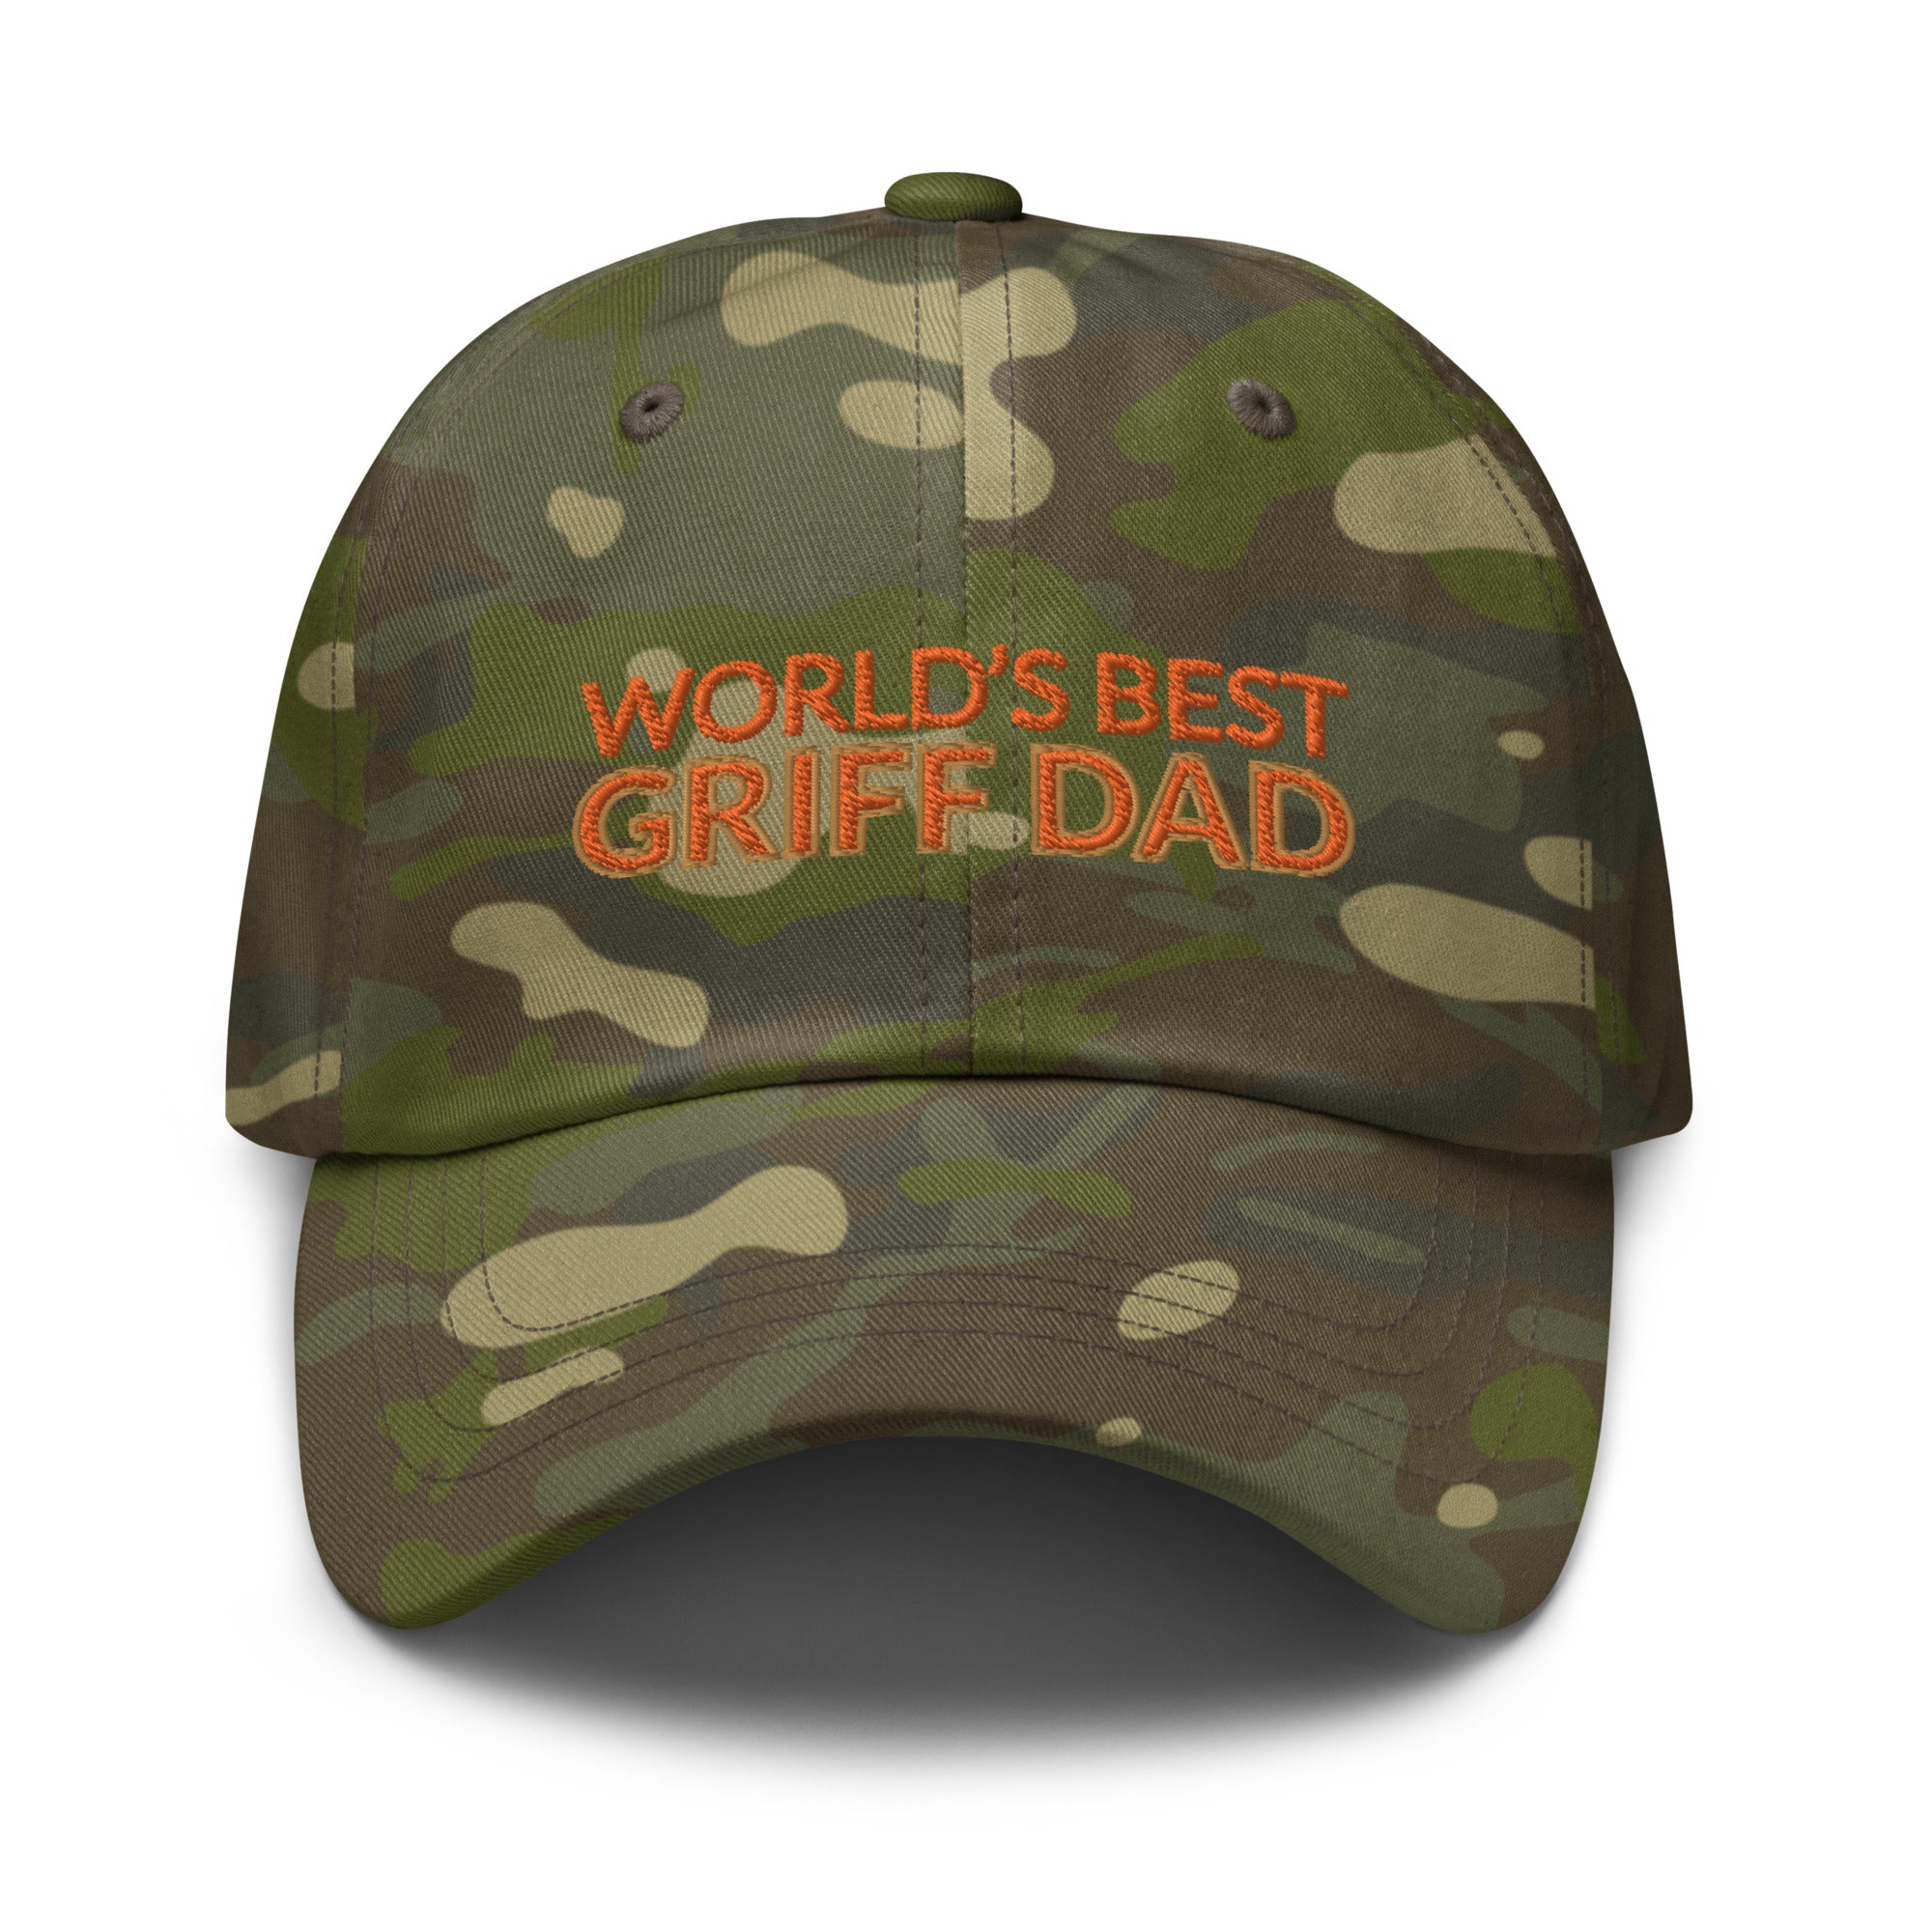 BEST GRIFF DAD hat